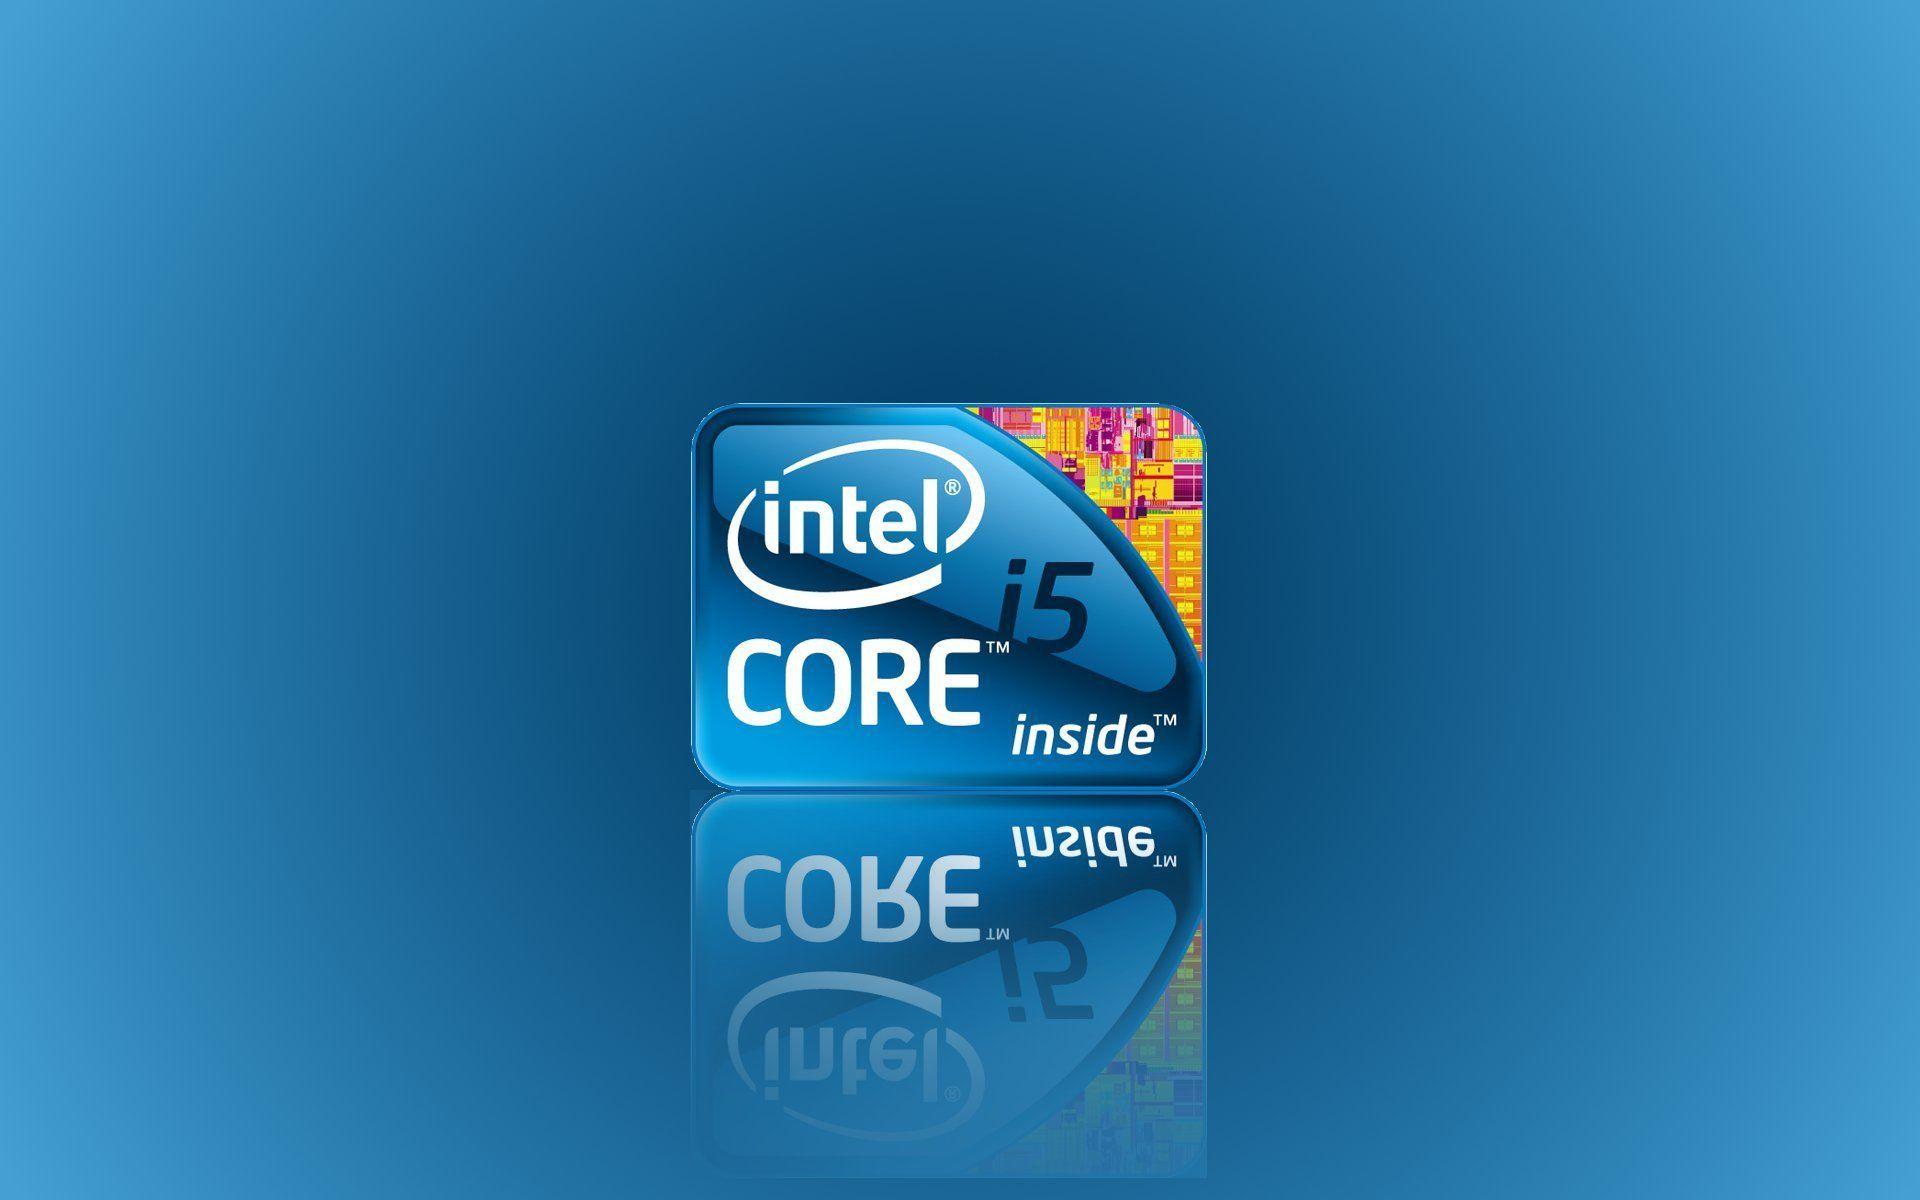 Intel Core i5 Wallpaper 45407 1920x1200 px